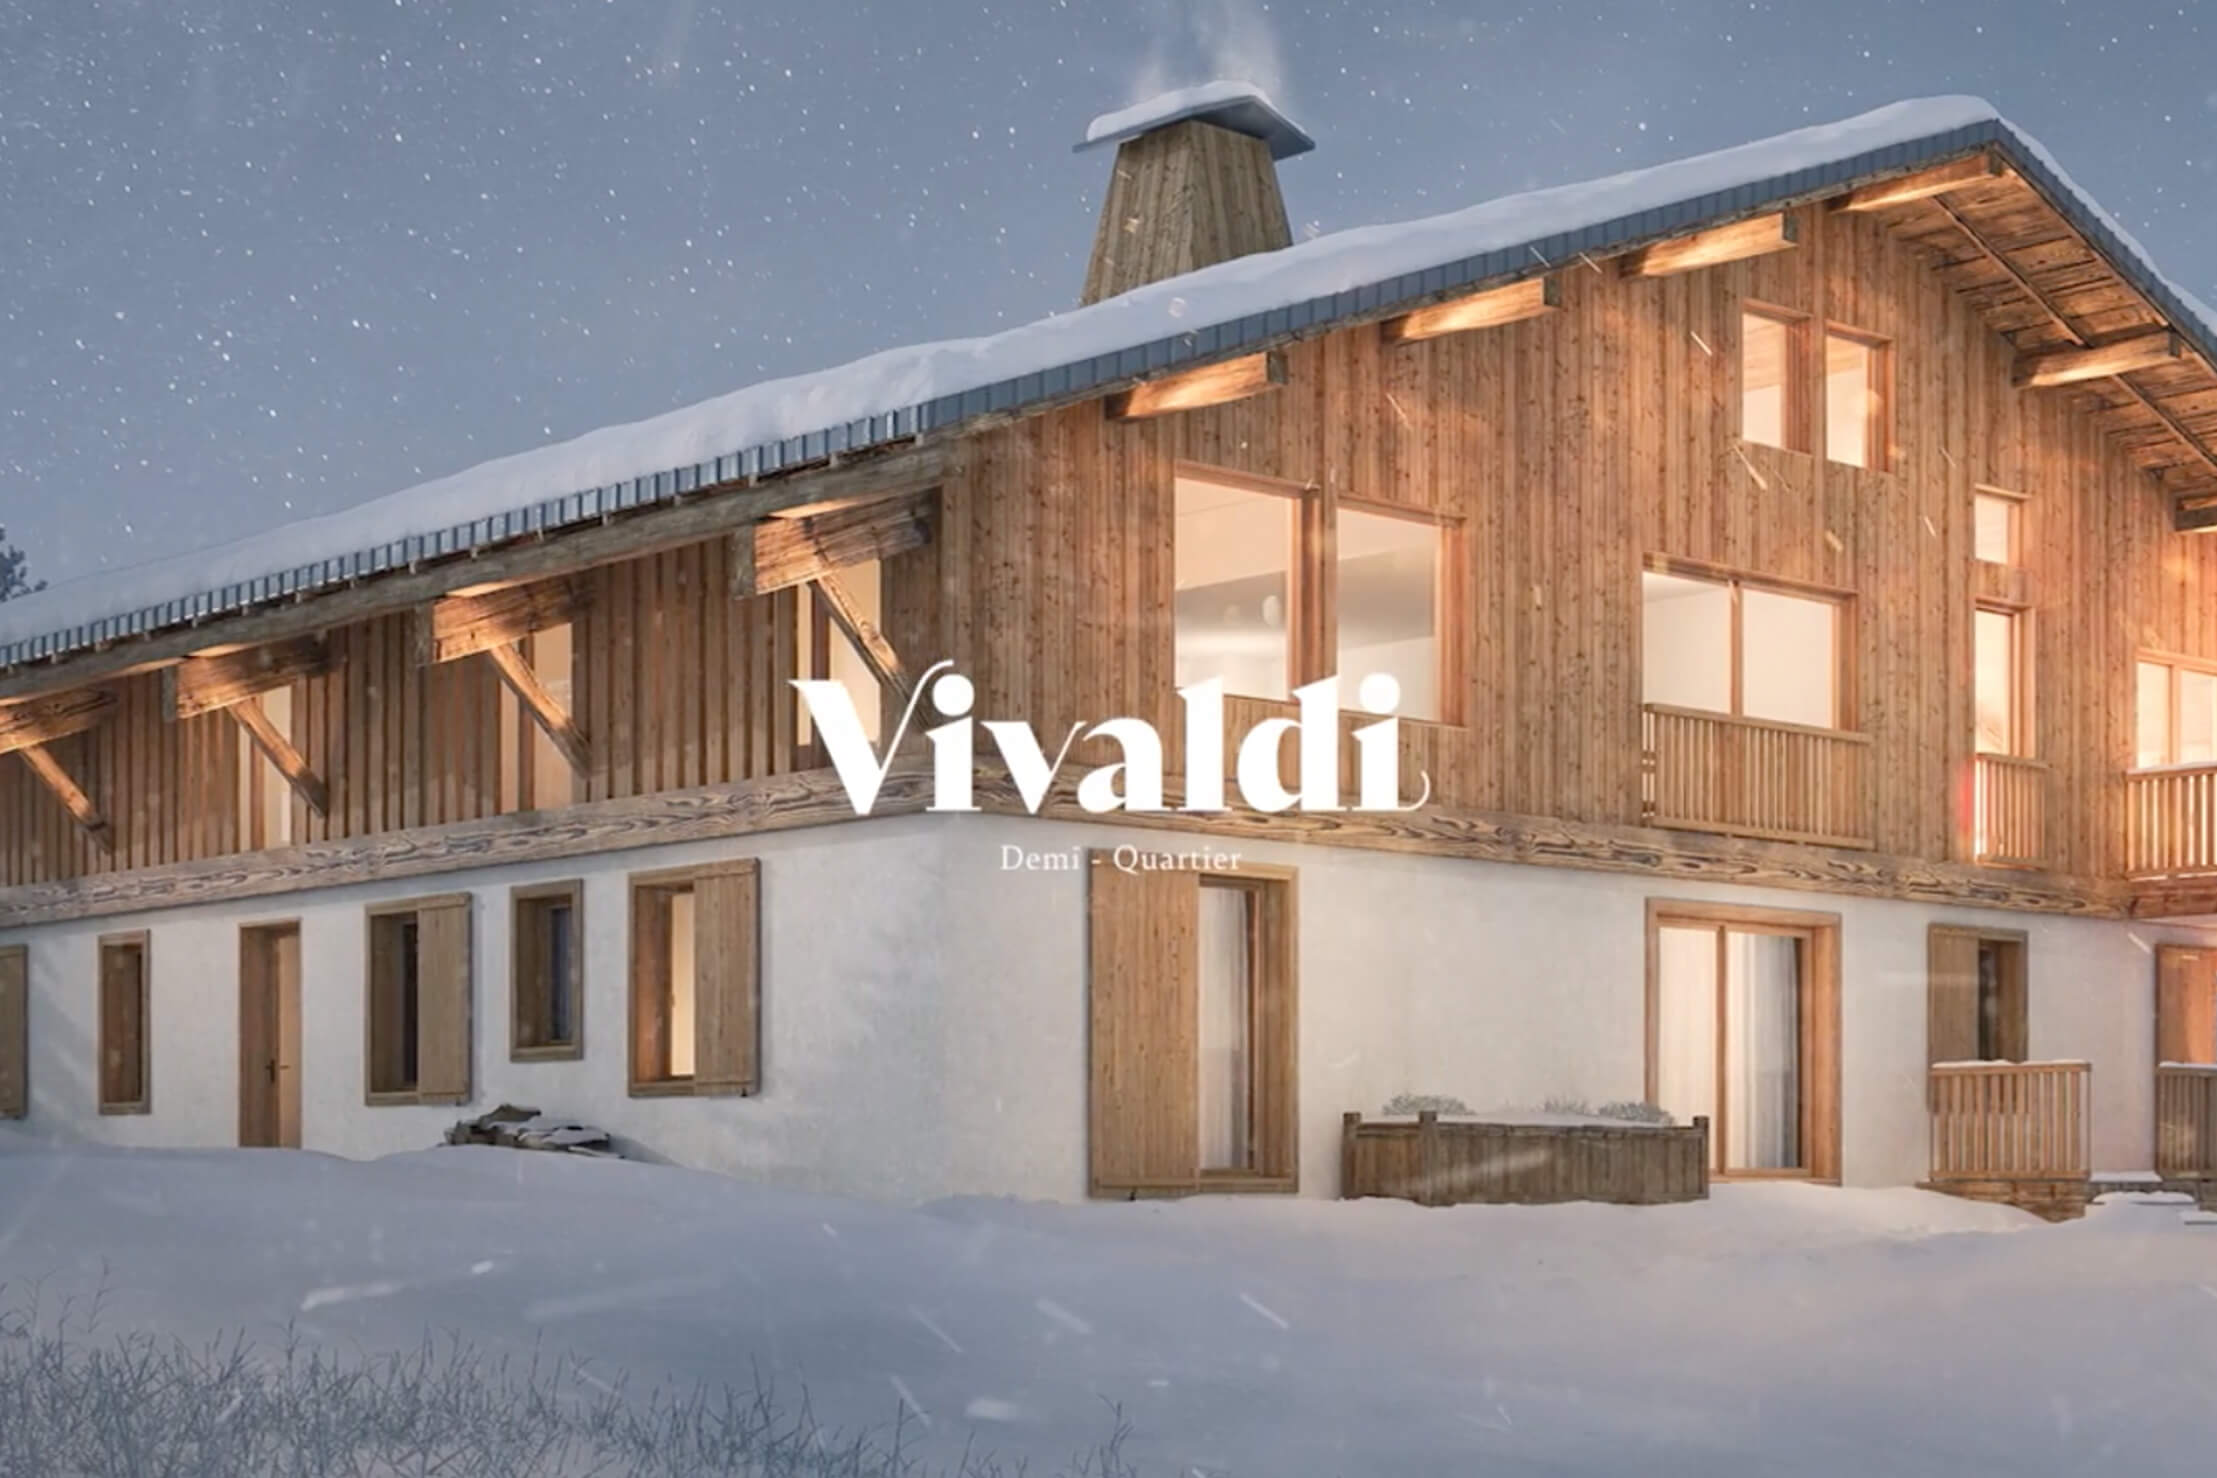 Aperçu du film de présentation du projet Vivaldi par Inovim Développement